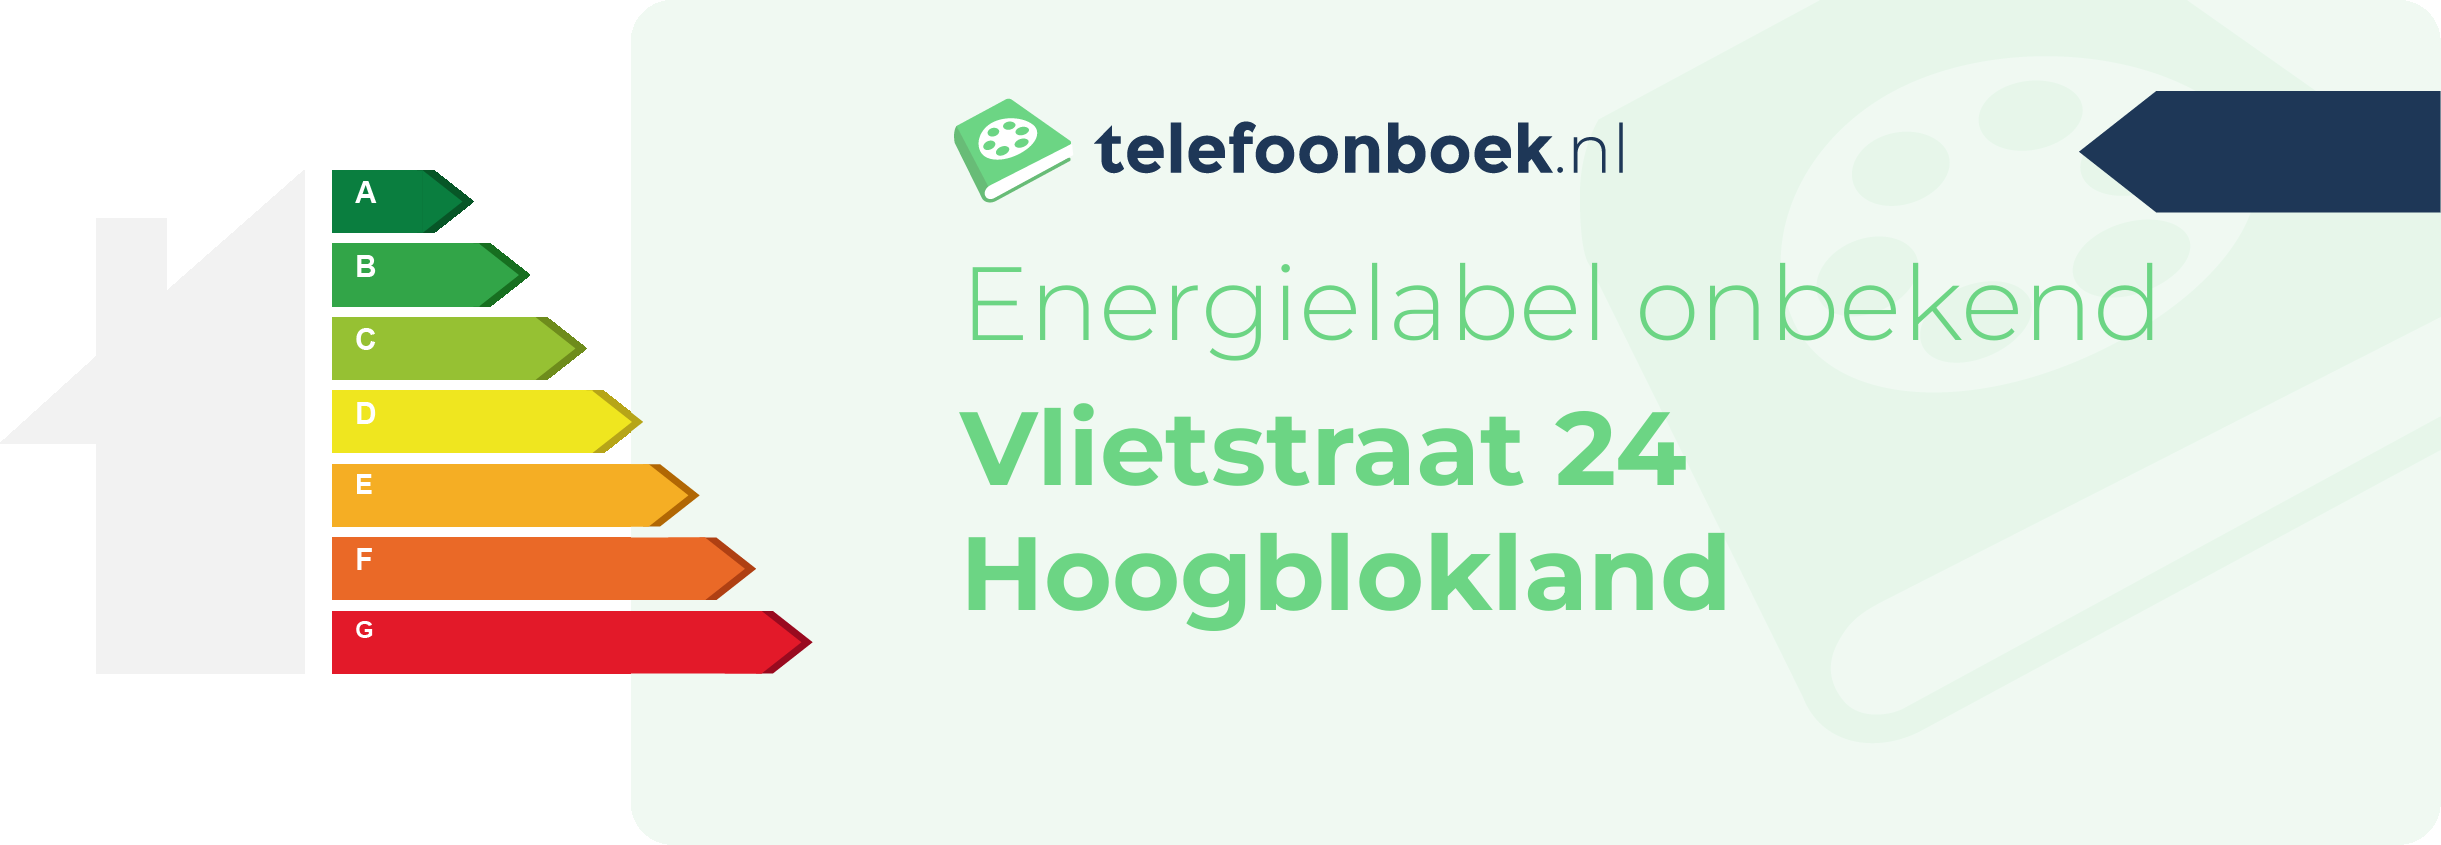 Energielabel Vlietstraat 24 Hoogblokland